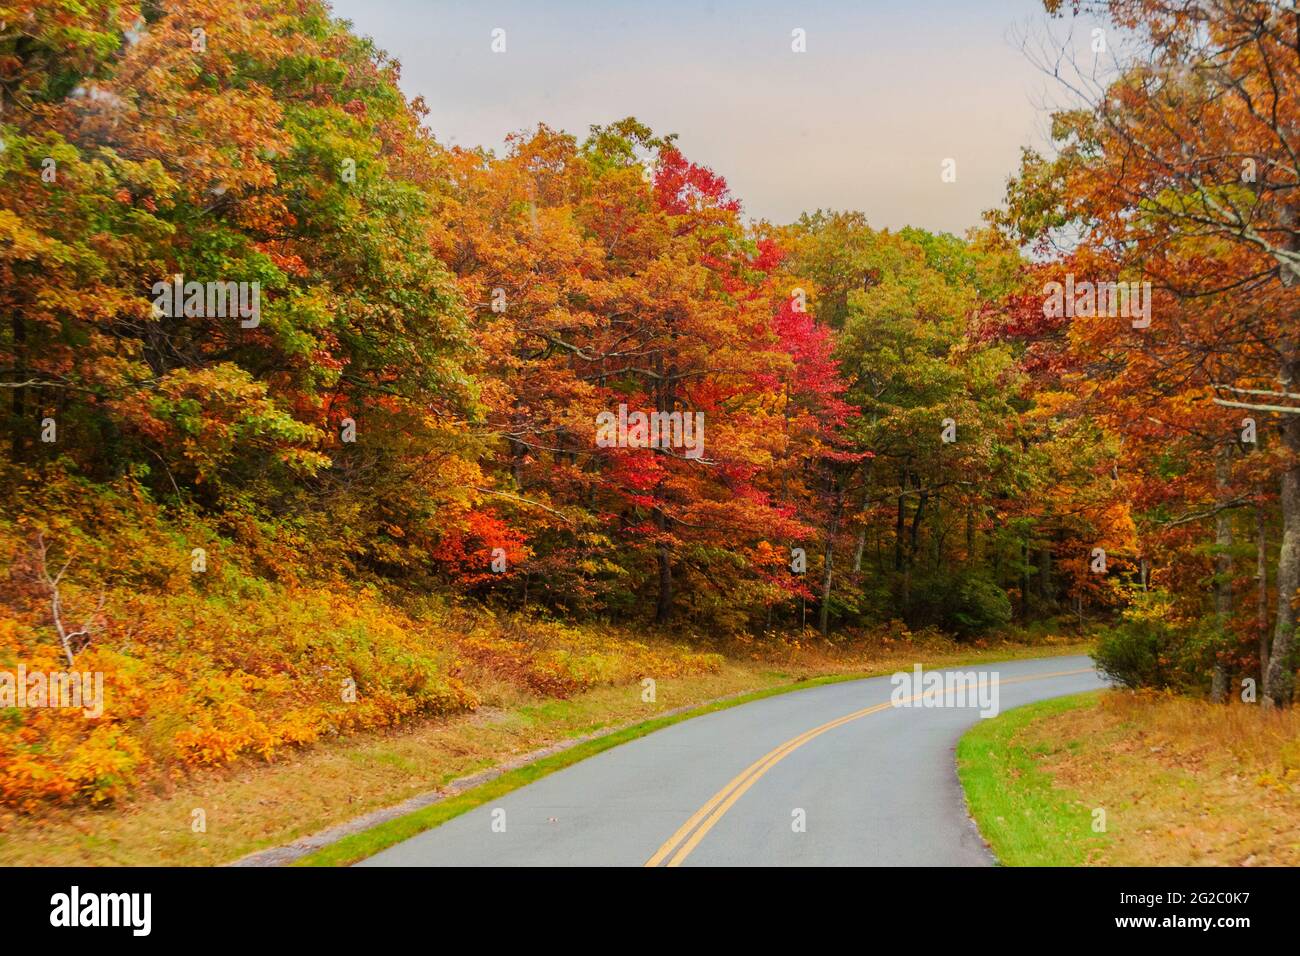 Carretera de dos carriles a través de la hermosa blue Ridge parkway, la cadena montañosa Appalachian en otoño. EE.UU. Foto de stock